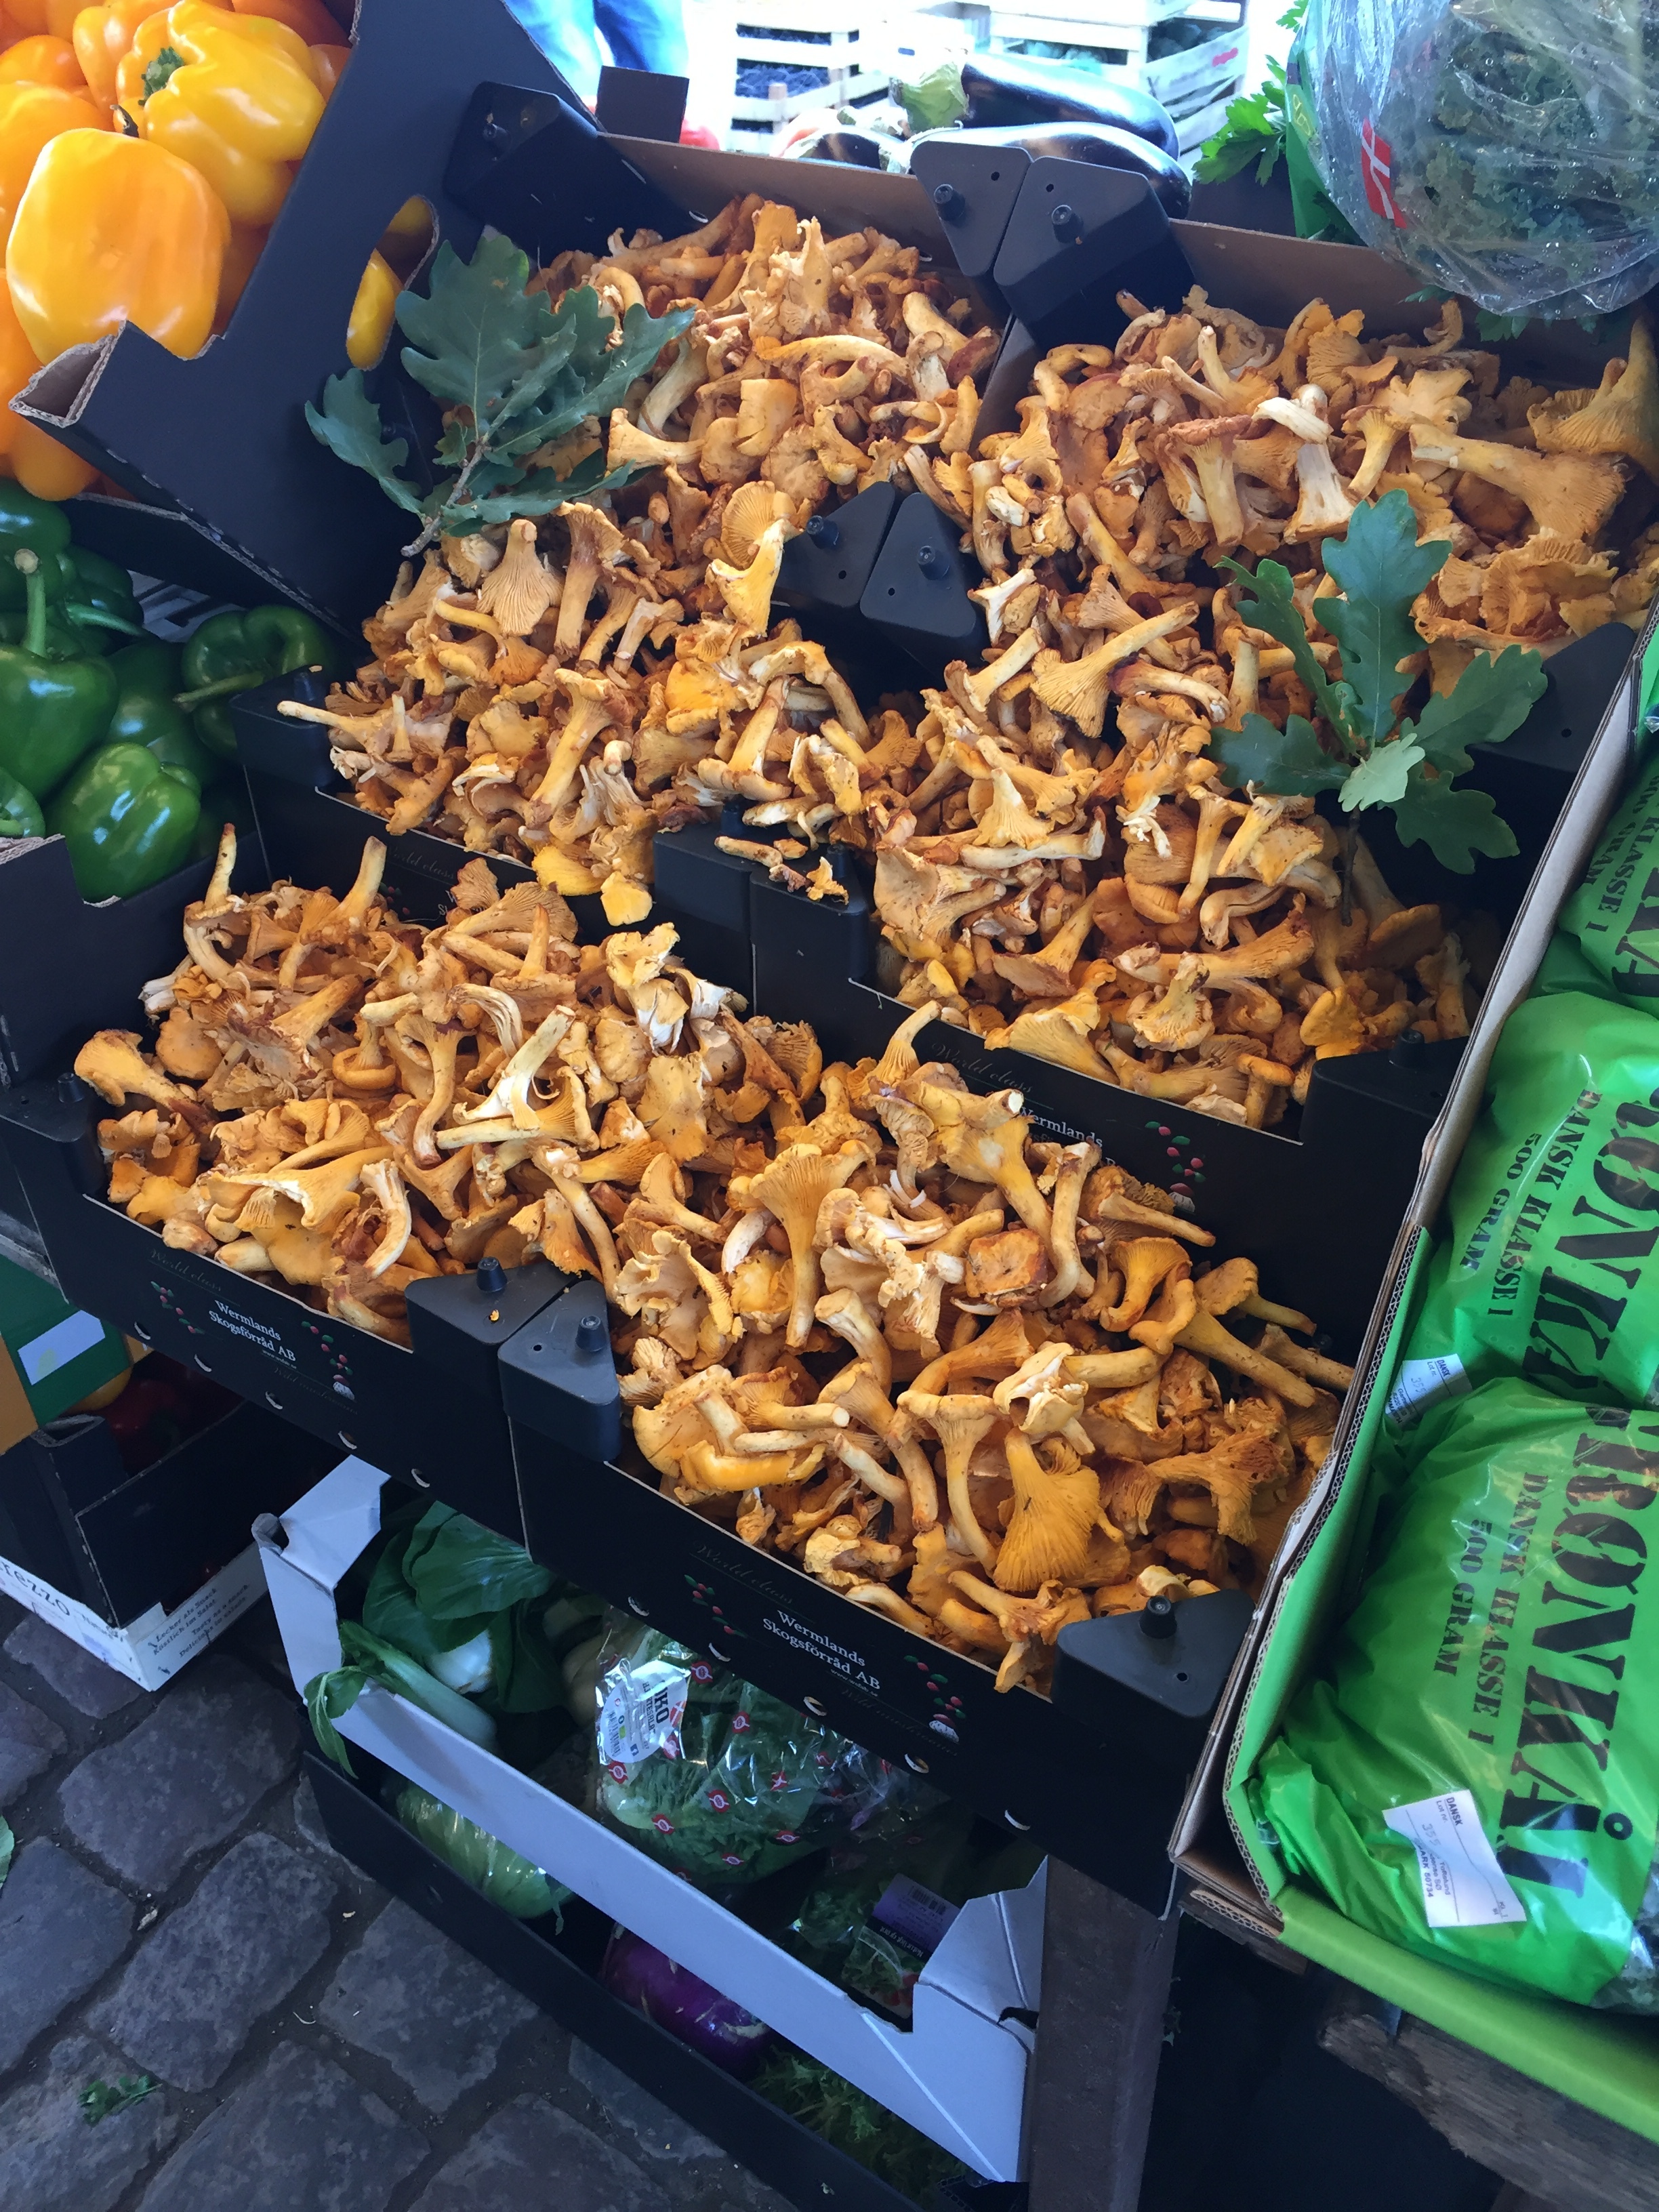 Mushrooms at a market in Copenhagen